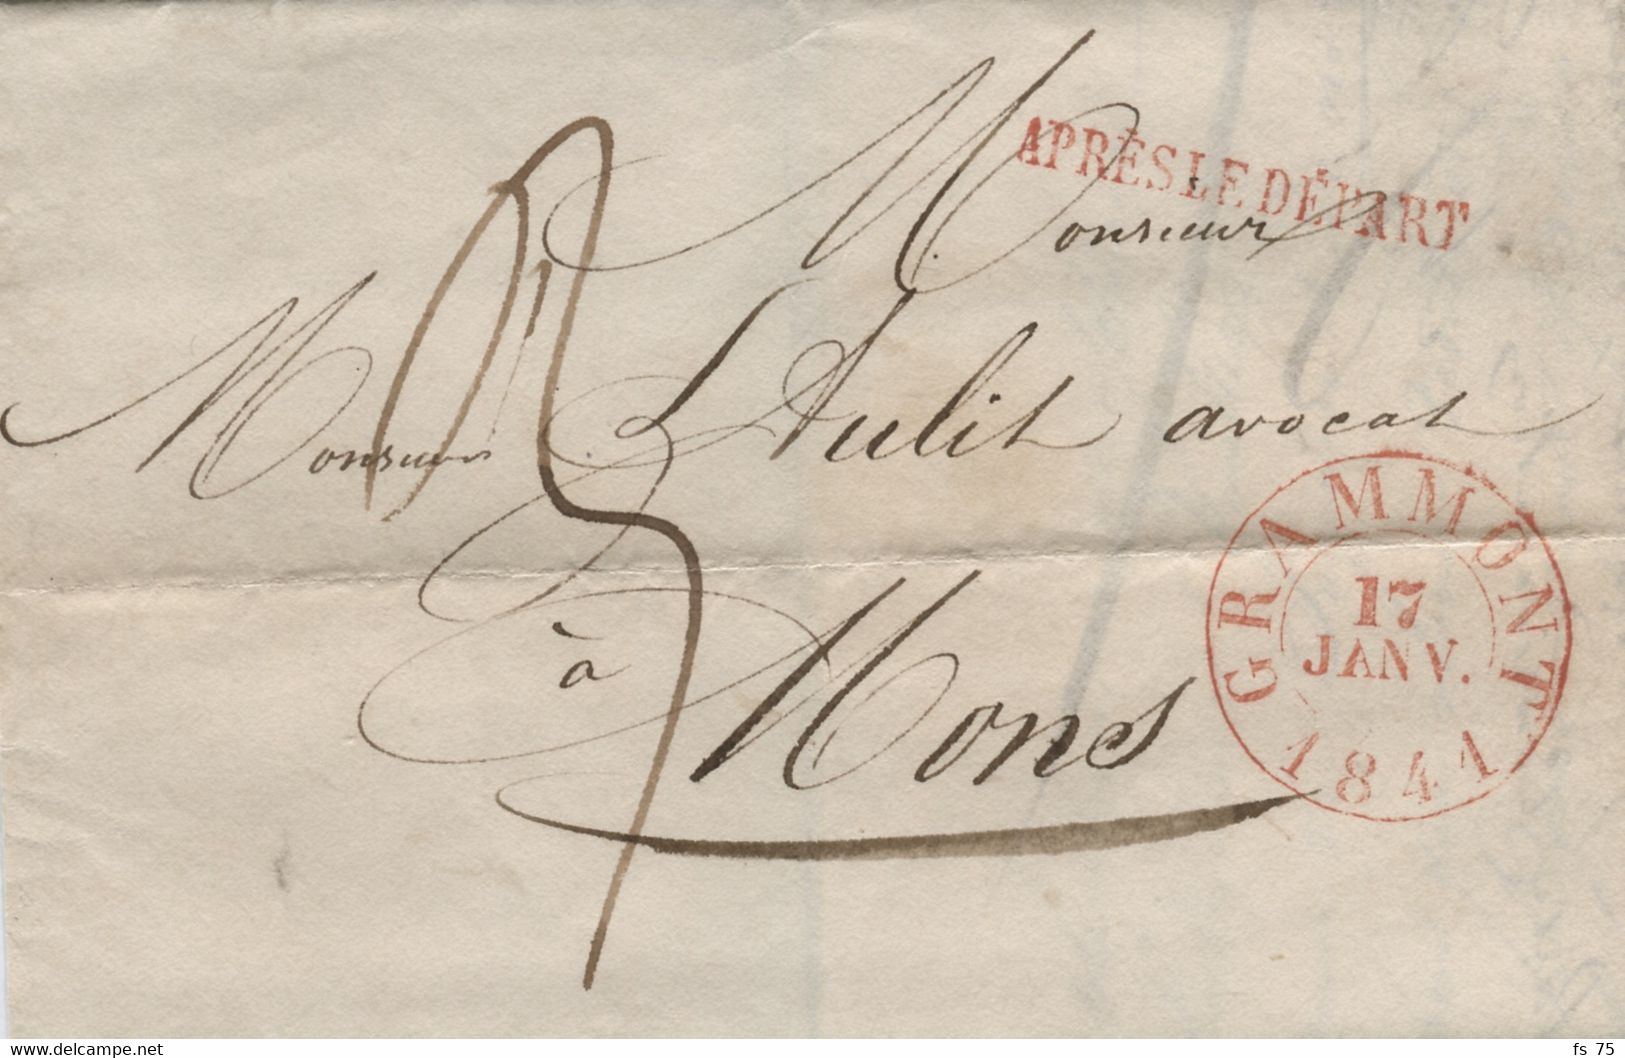 BELGIQUE - GRAMMONT + APRES LE DEPART SUR LETTRE SANS CORRESPONDANCE, 1841 - 1830-1849 (Independent Belgium)